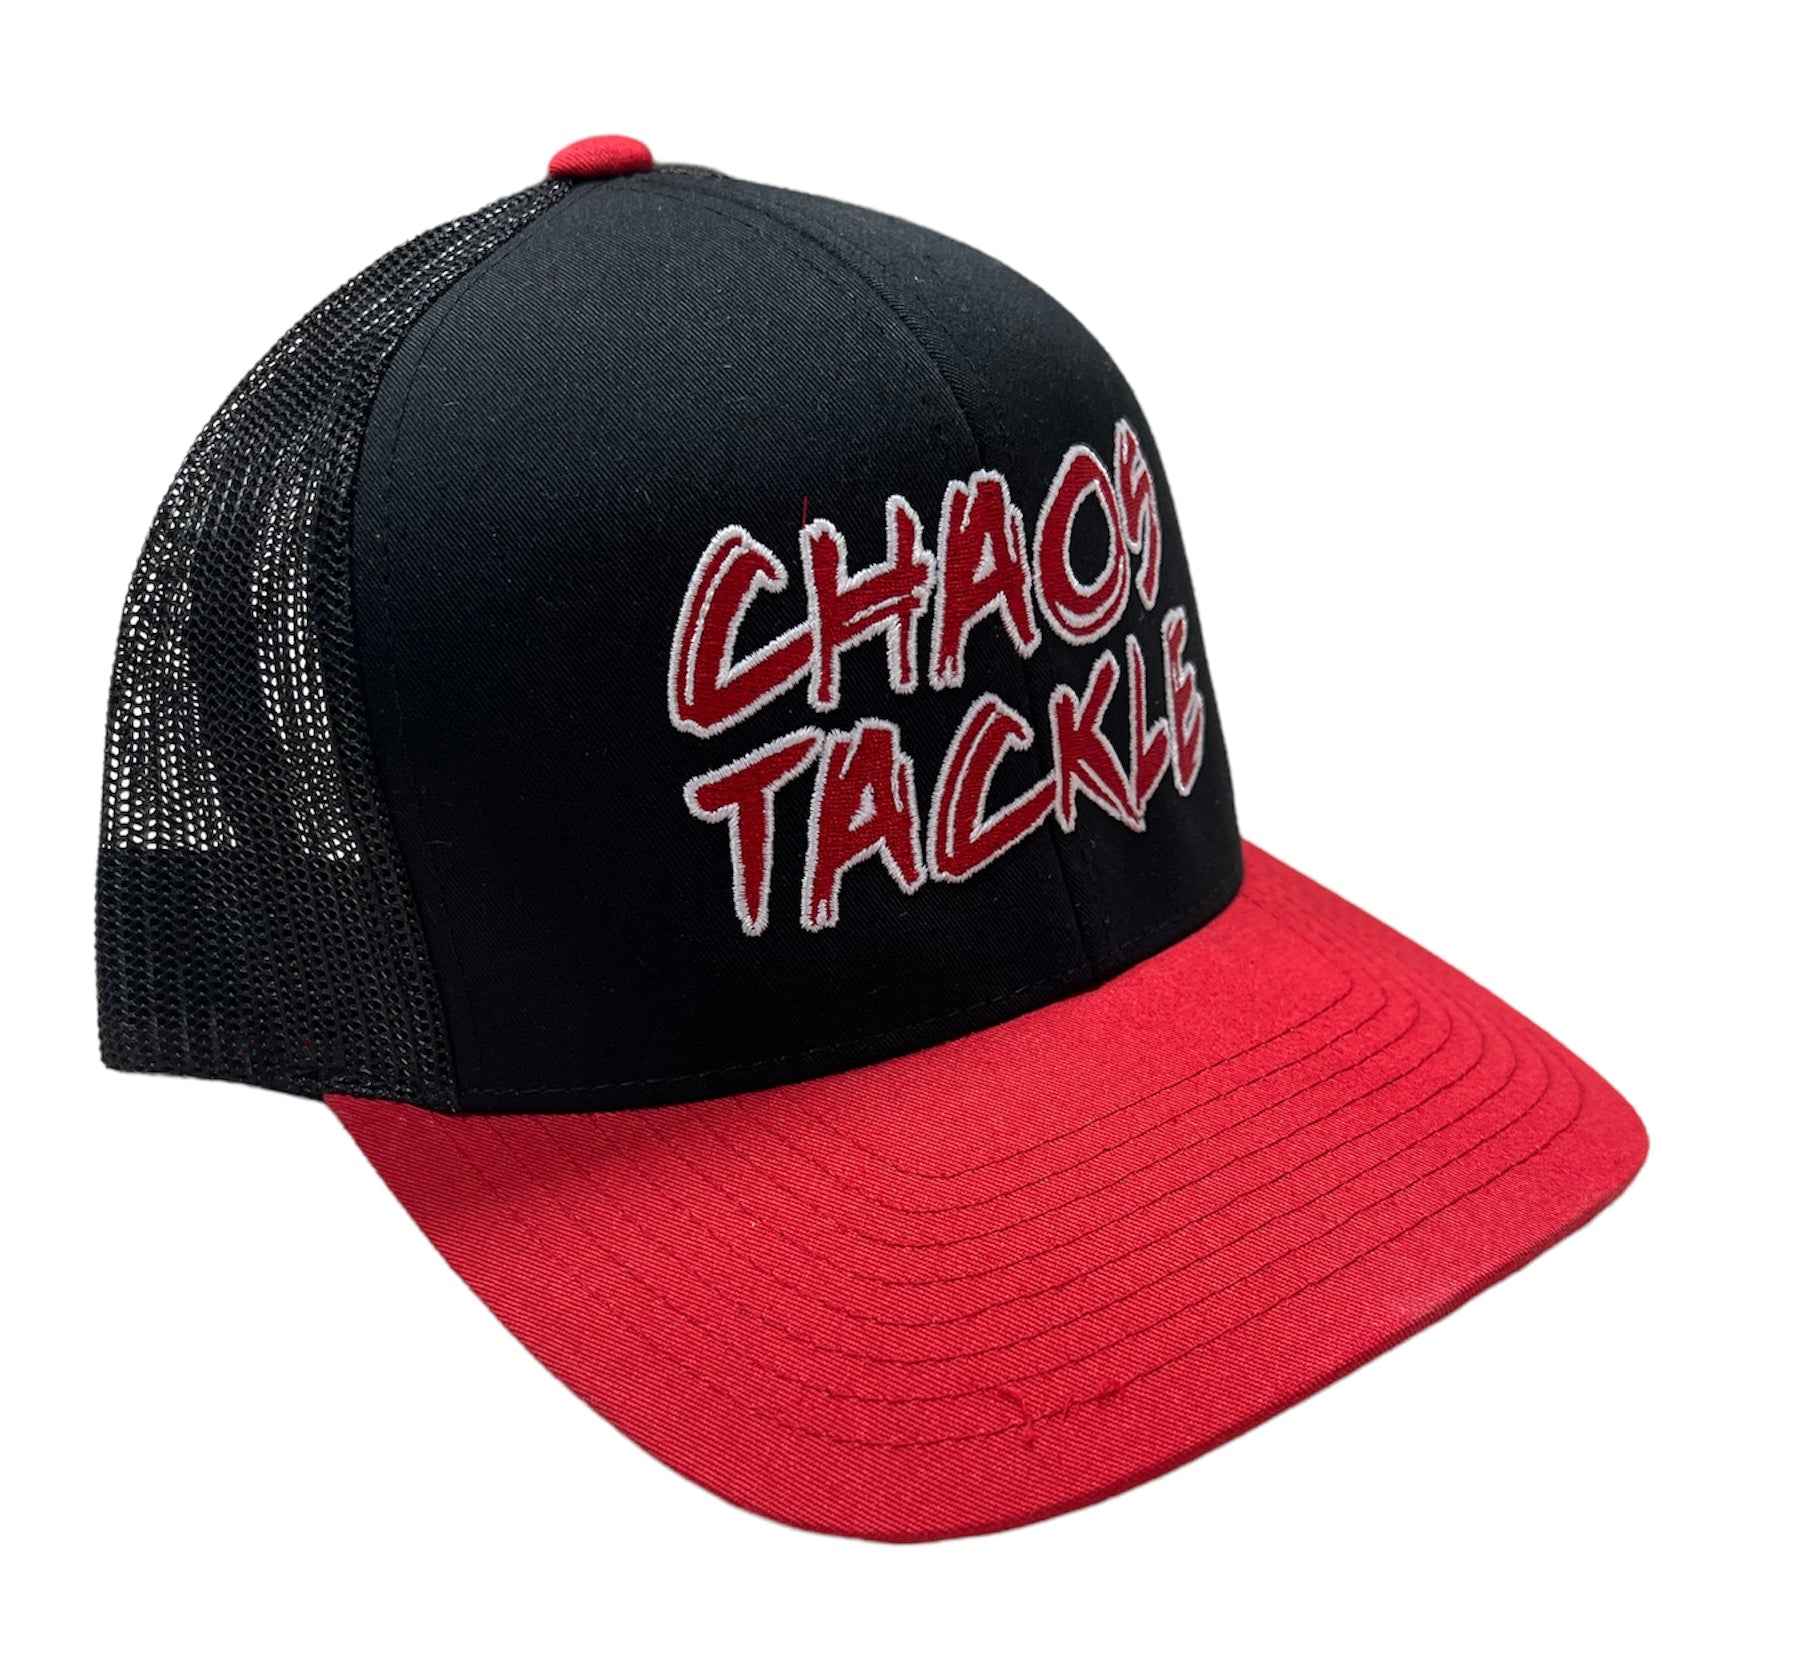 HATS – Chaos Tackle